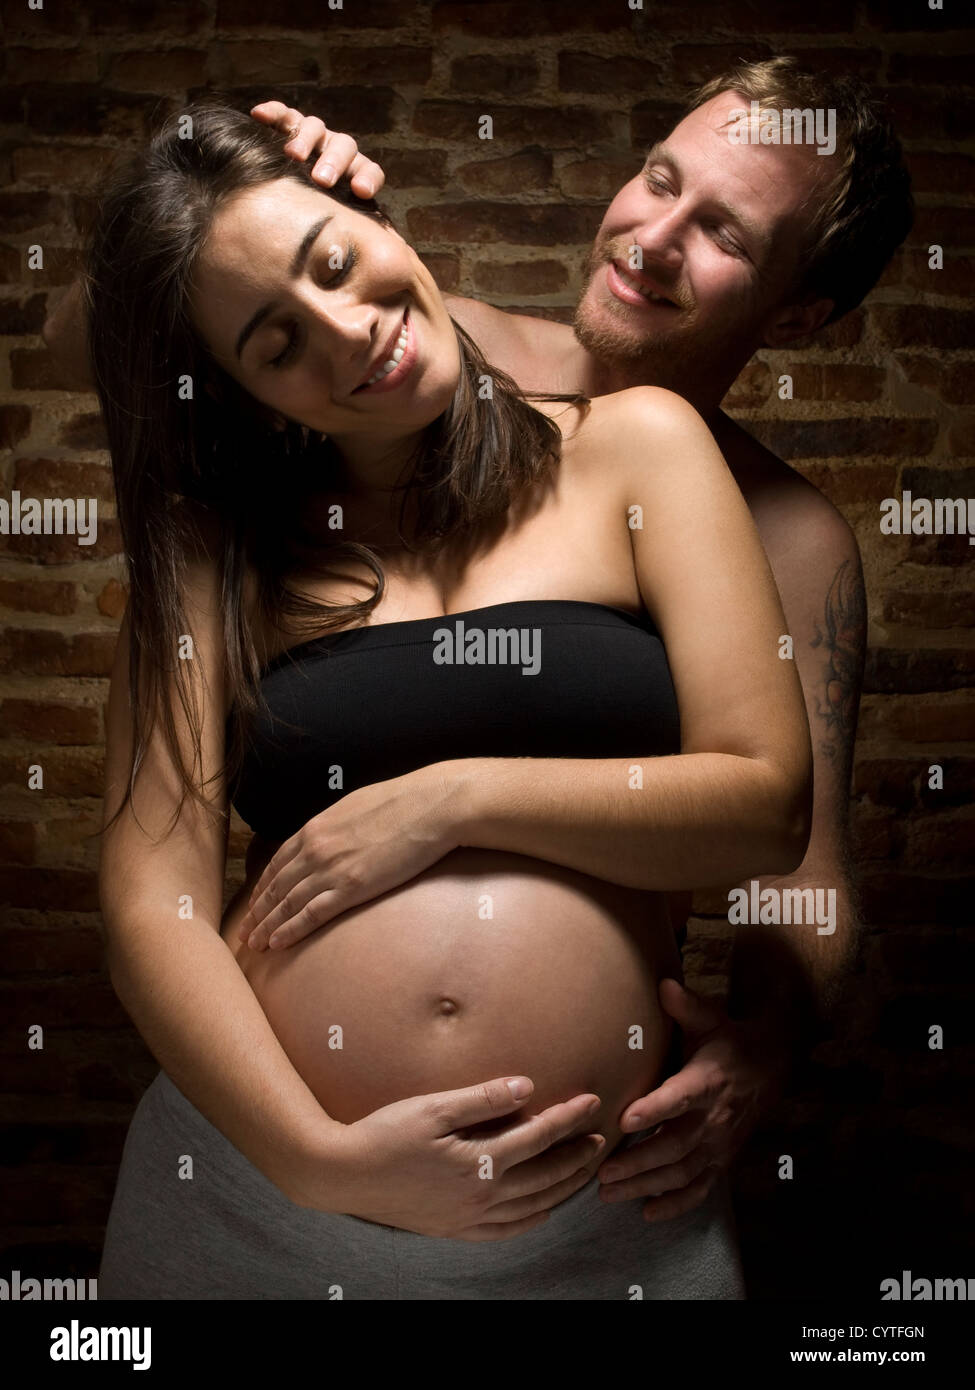 Un homme caressant sa belle femme enceinte Photo Stock - Alamy